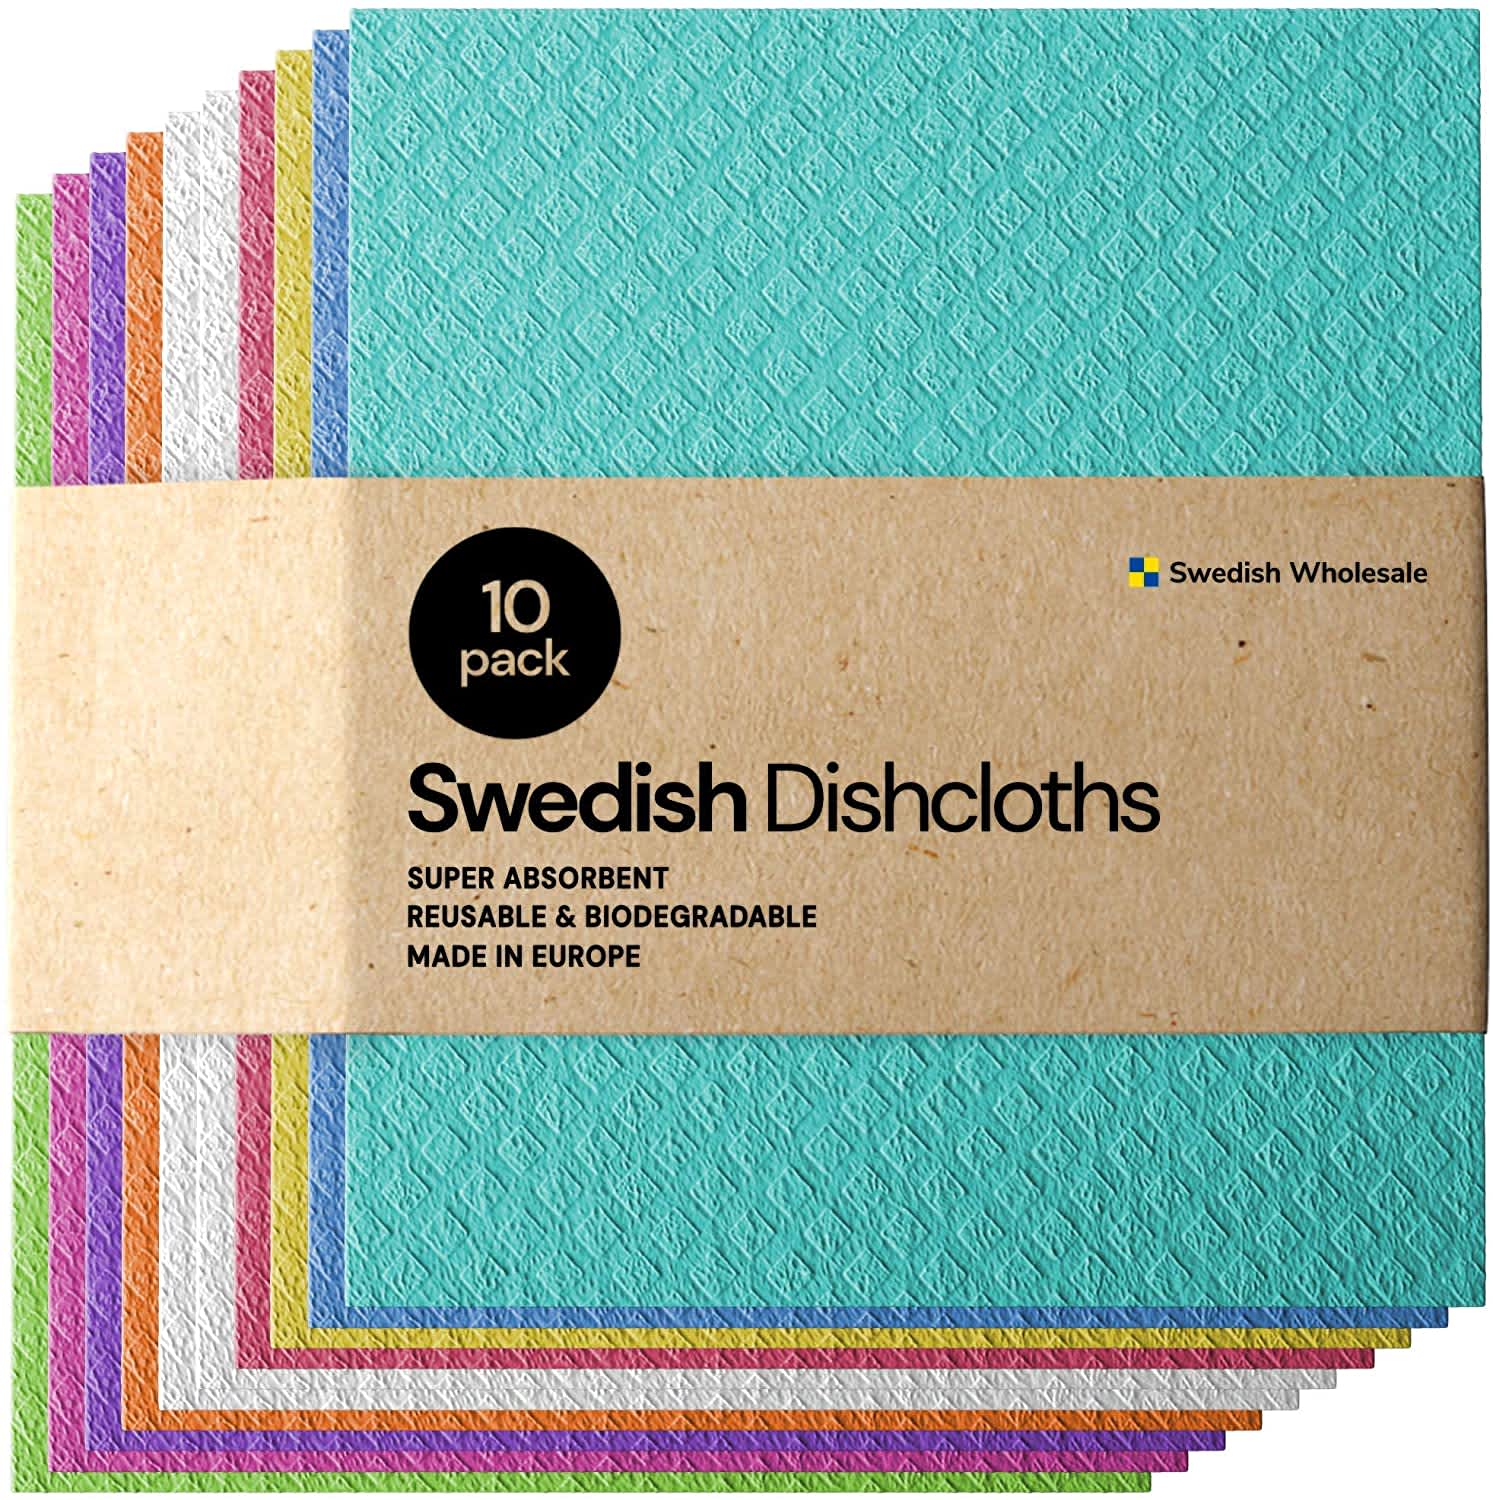 Papaya Reusables' Swedish Dishcloth Review